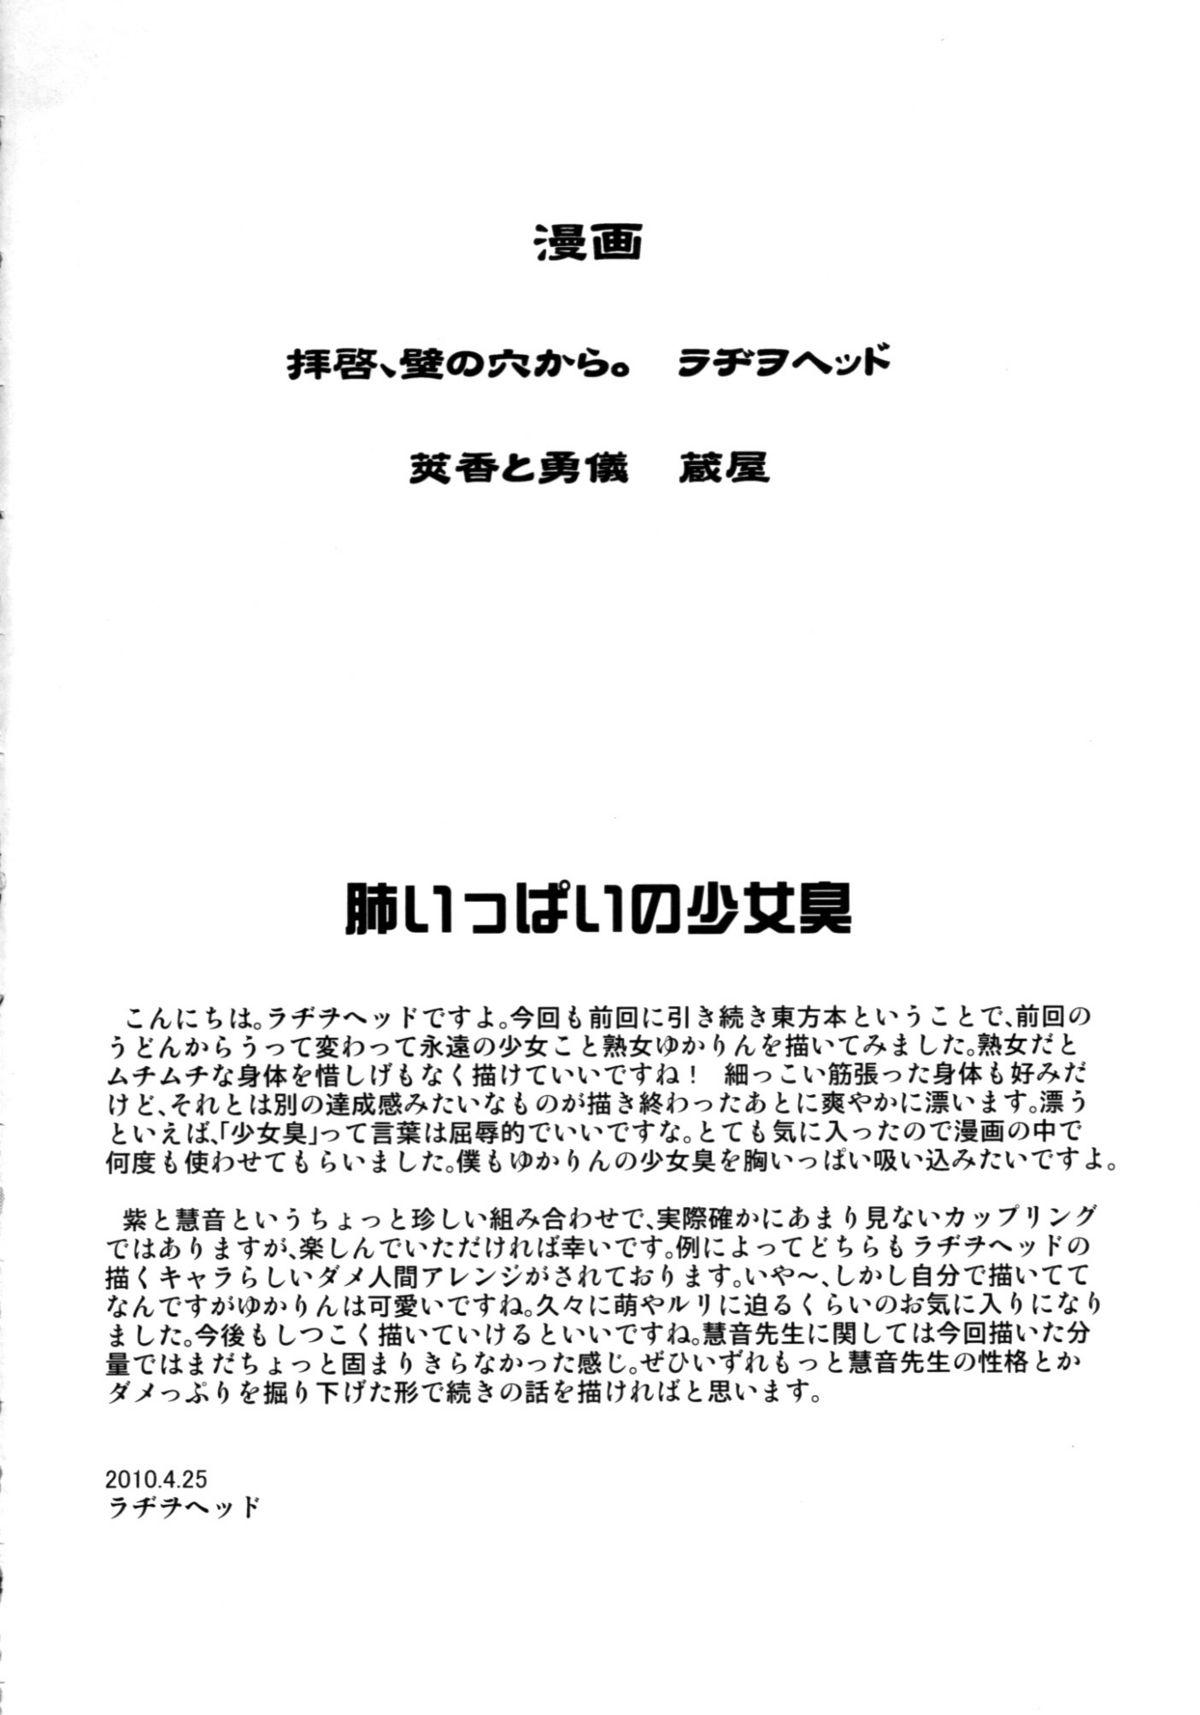 Pov Blow Job Haikei, Kabe no Ana kara. - Touhou project Gayhardcore - Page 3